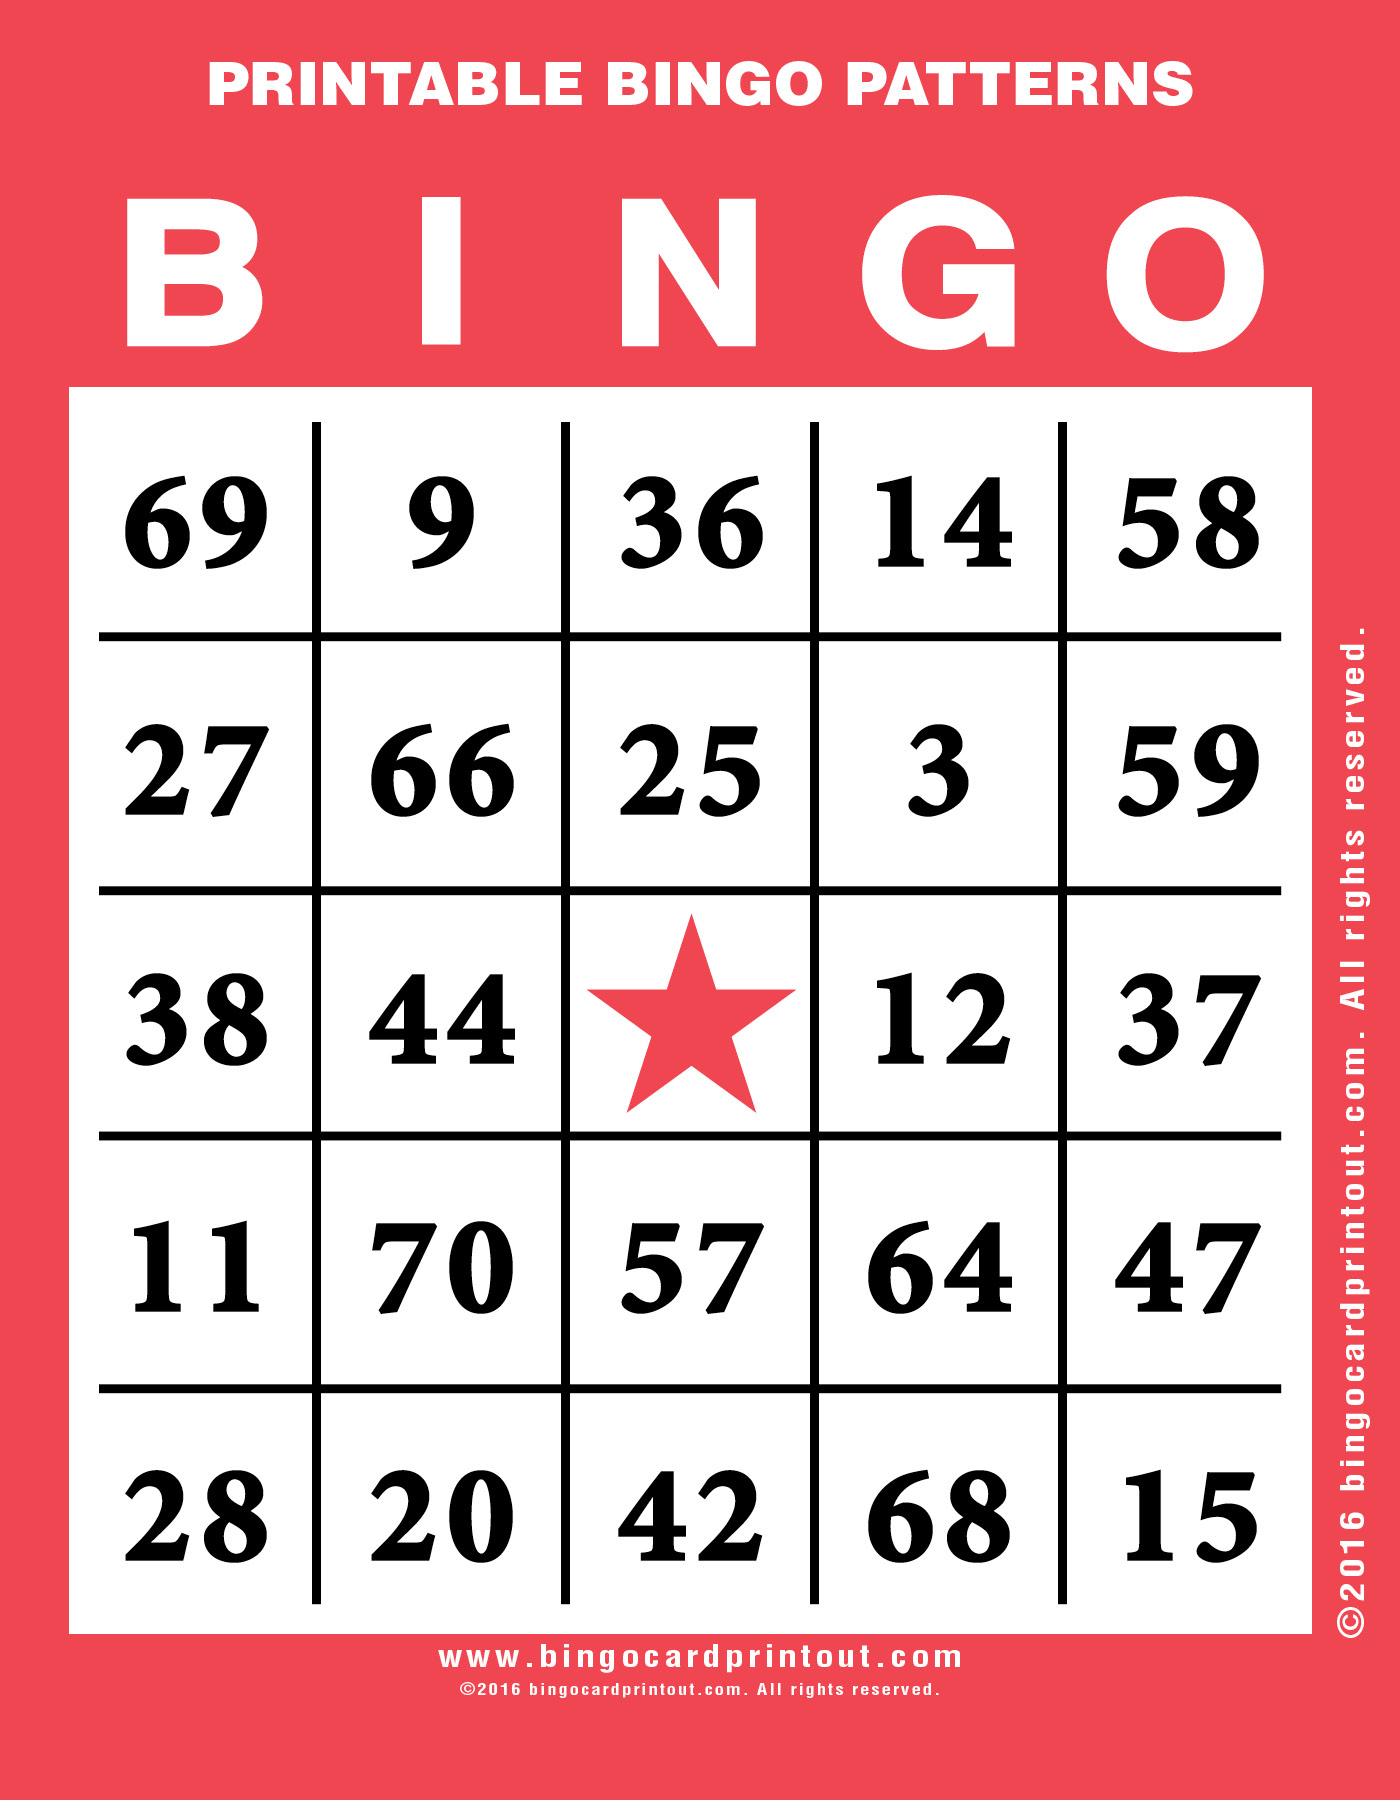 Printable Bingo Patterns BingoCardPrintout